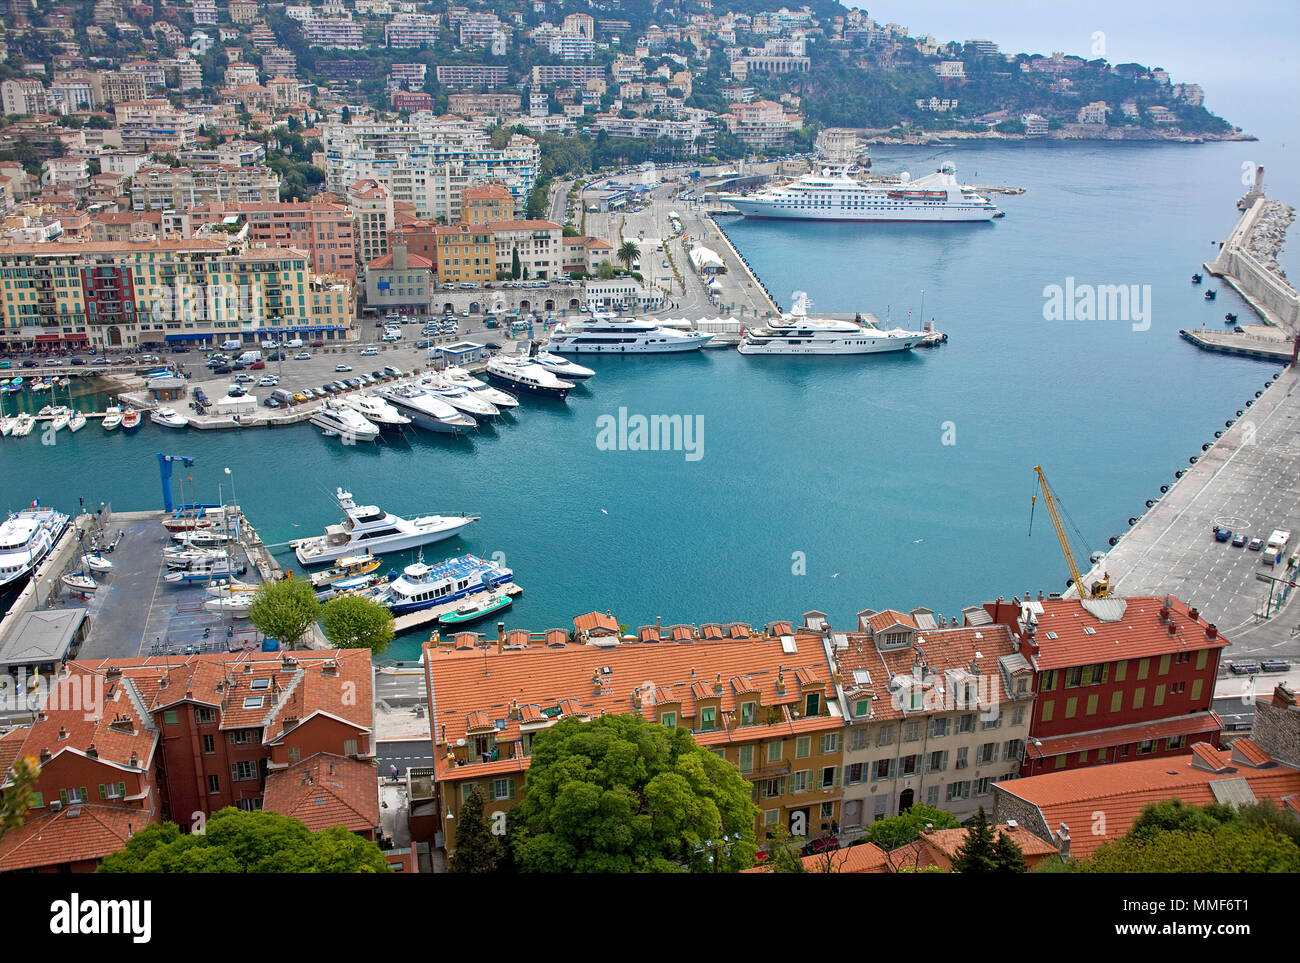 Hafen von Nizza, Côte d'Azur, Alpes-Maritimes, Suedfrankreich, Frankreich | Port de Nice, Côte d'Azur, Alpes-Maritimes, France du Sud, France Banque D'Images